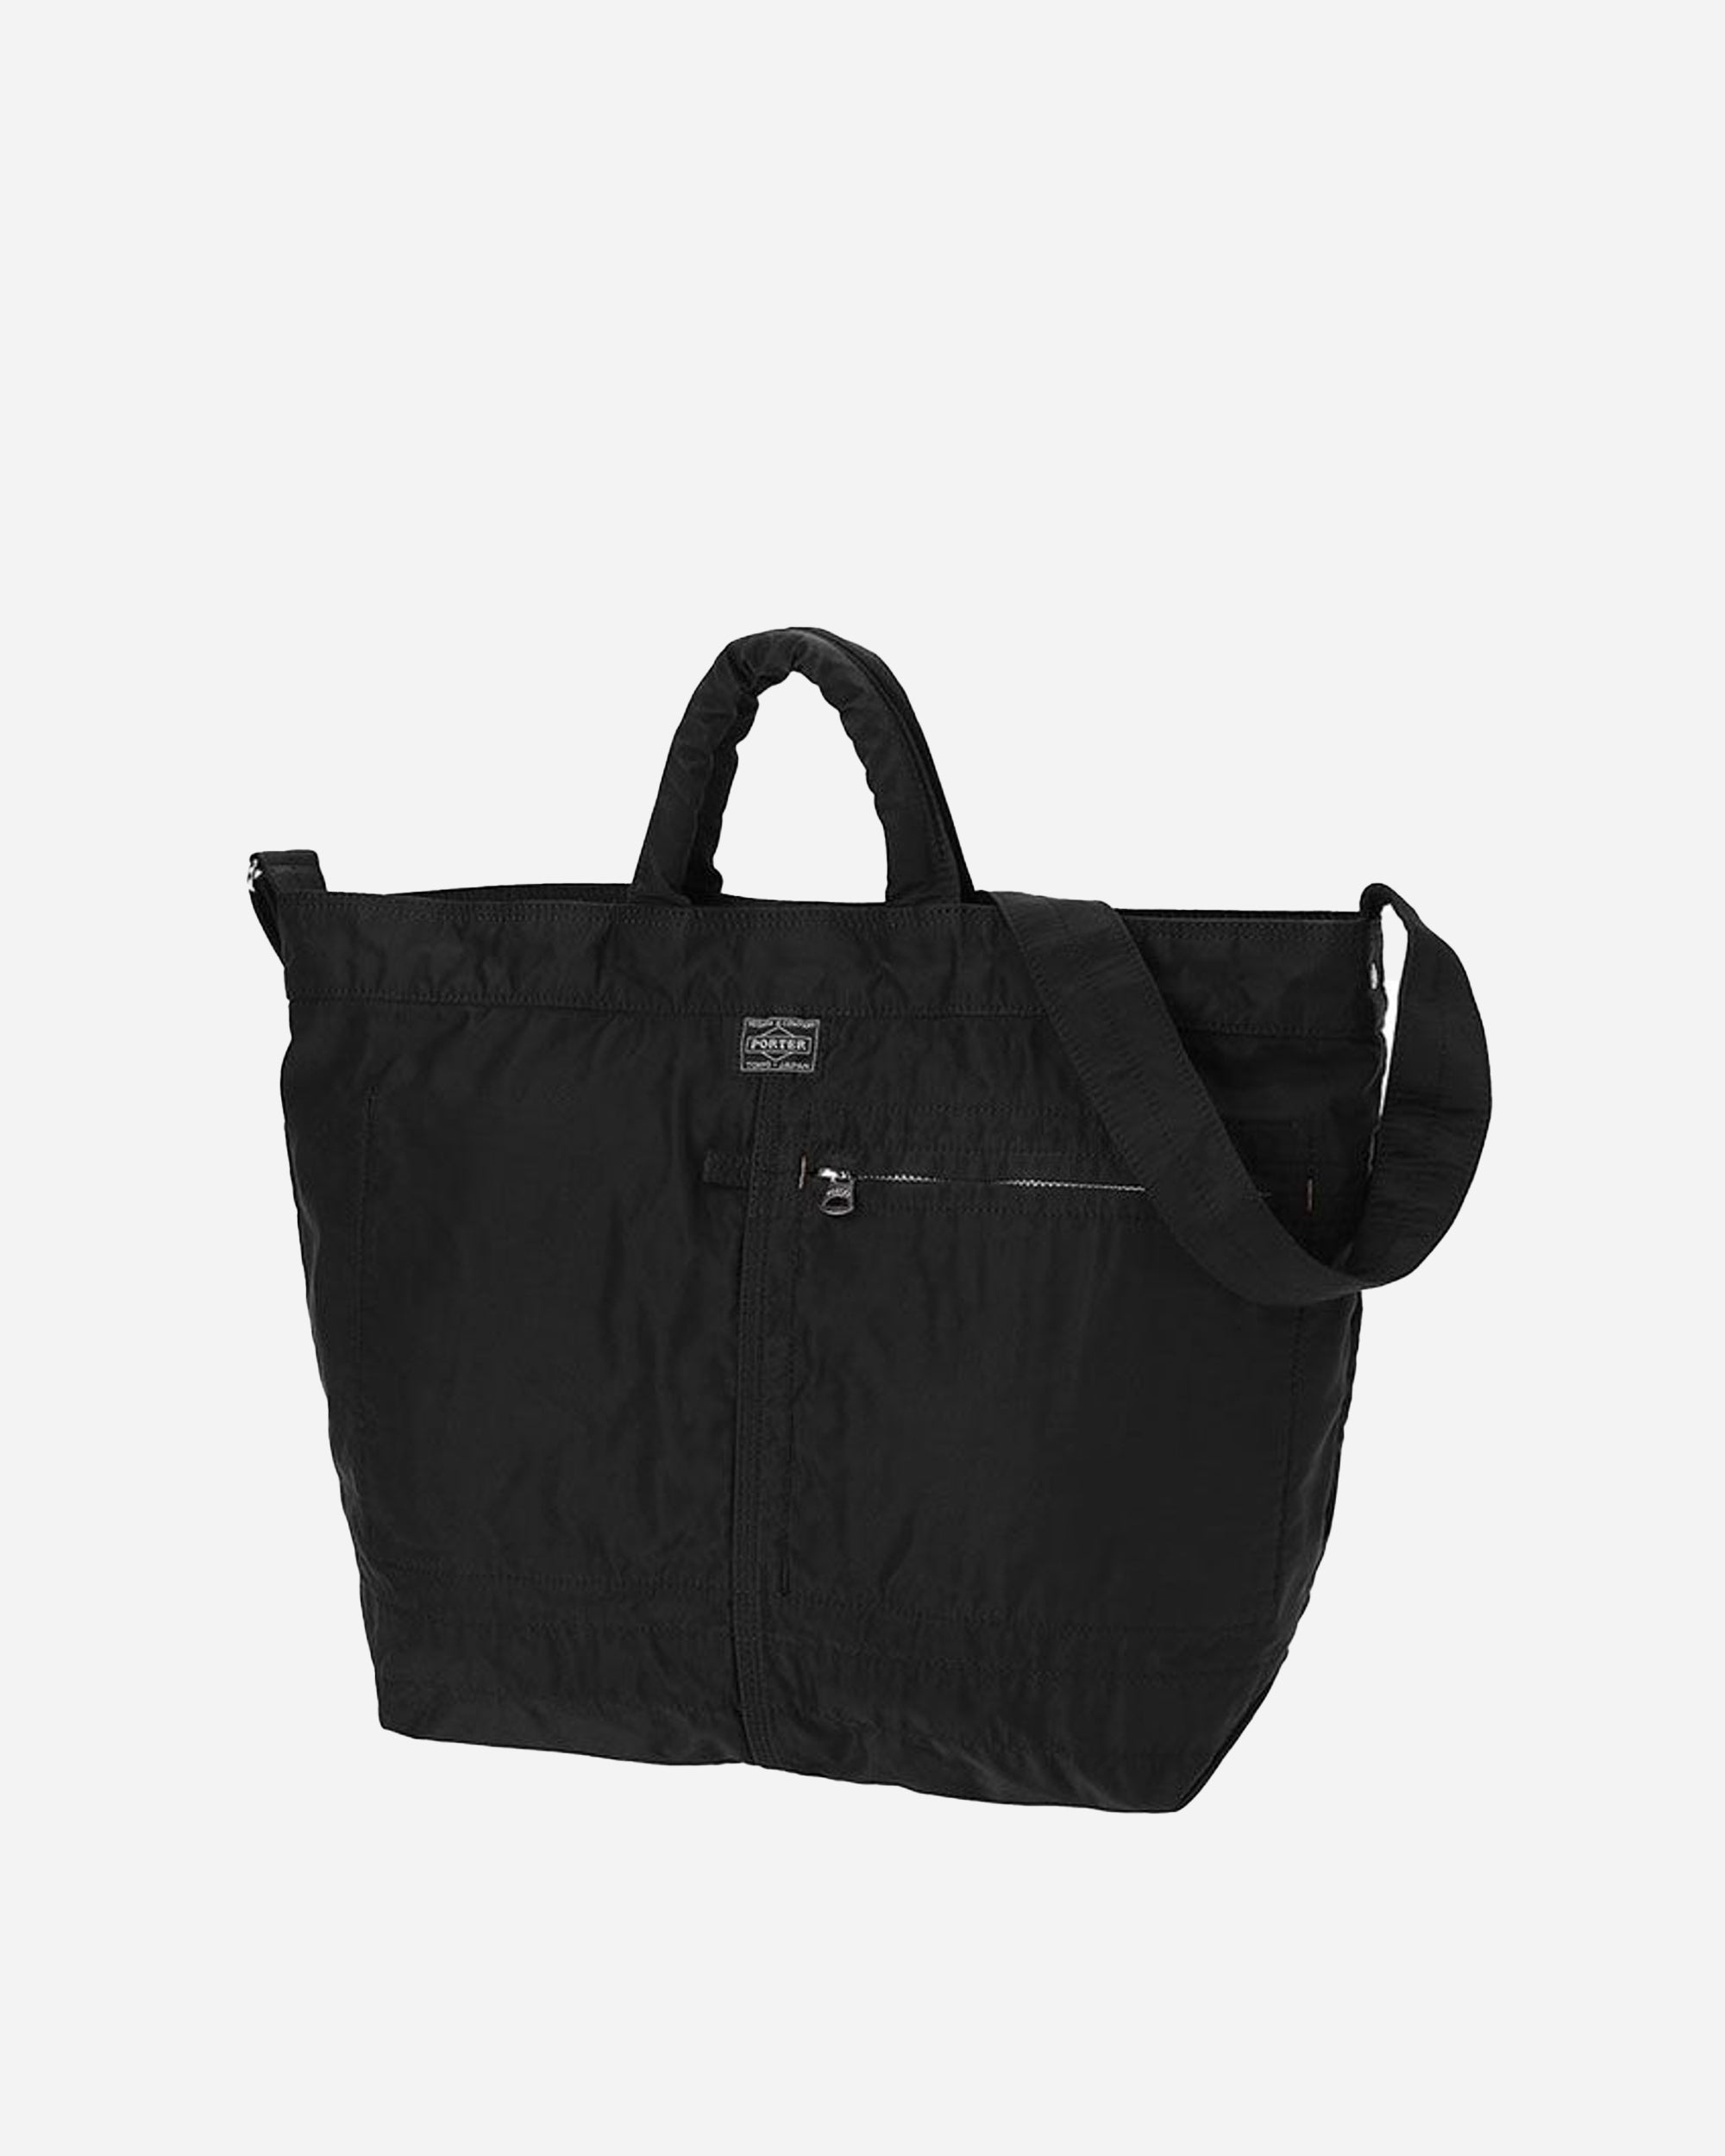 PORTER - Yoshida & Co Mile 2Way Tote Bag Small Black 754-15108-10